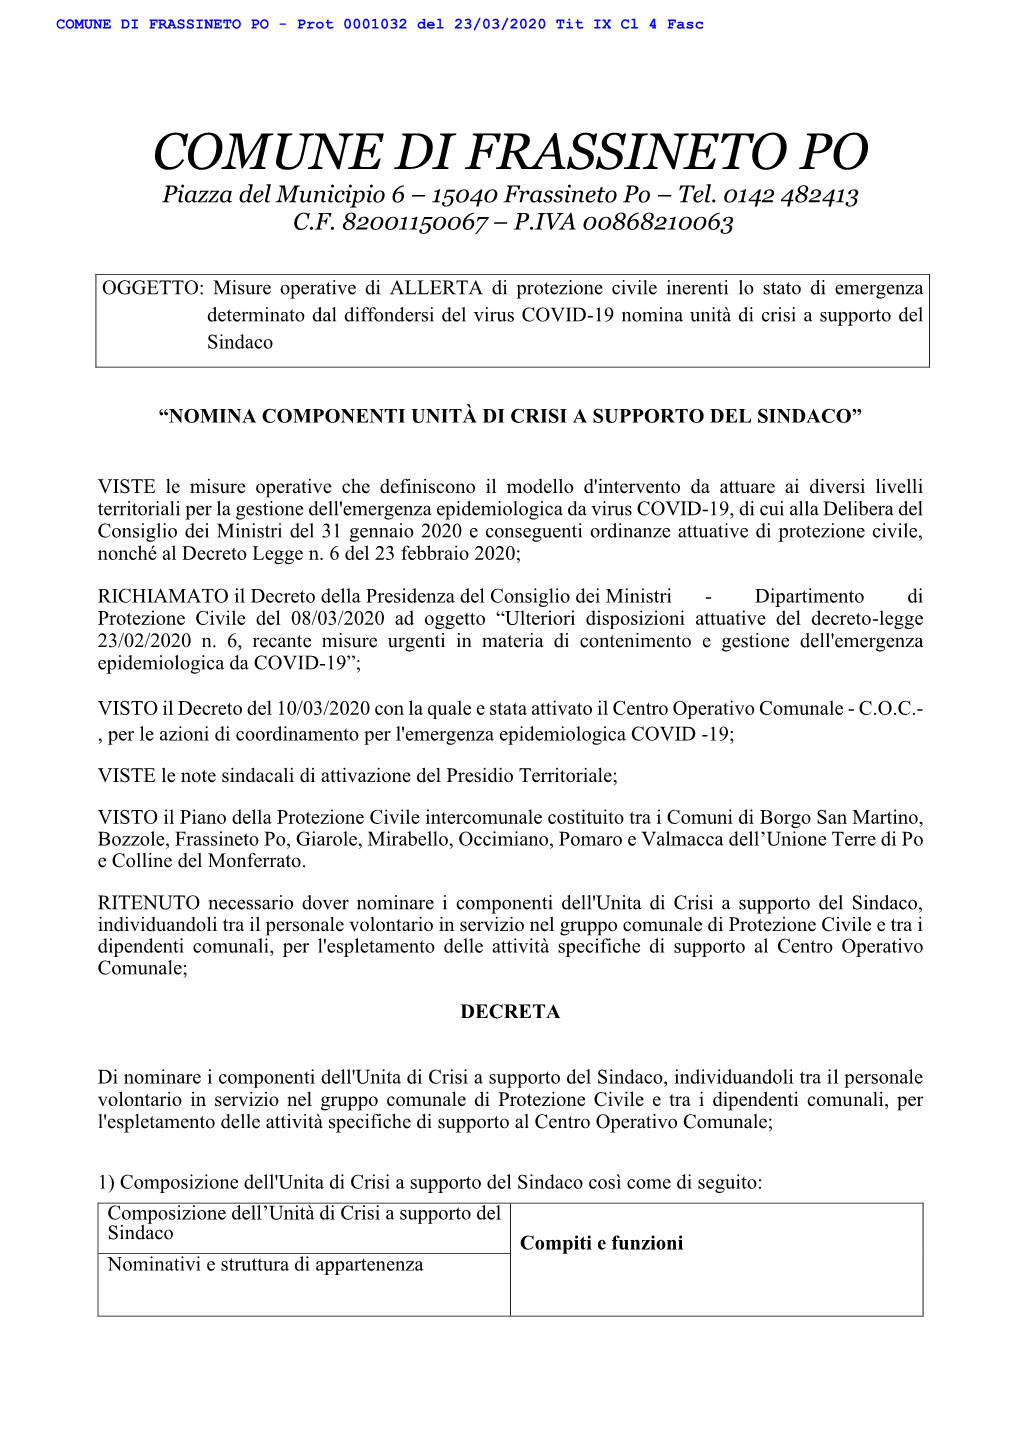 COMUNE DI FRASSINETO PO - Prot 0001032 Del 23/03/2020 Tit IX Cl 4 Fasc